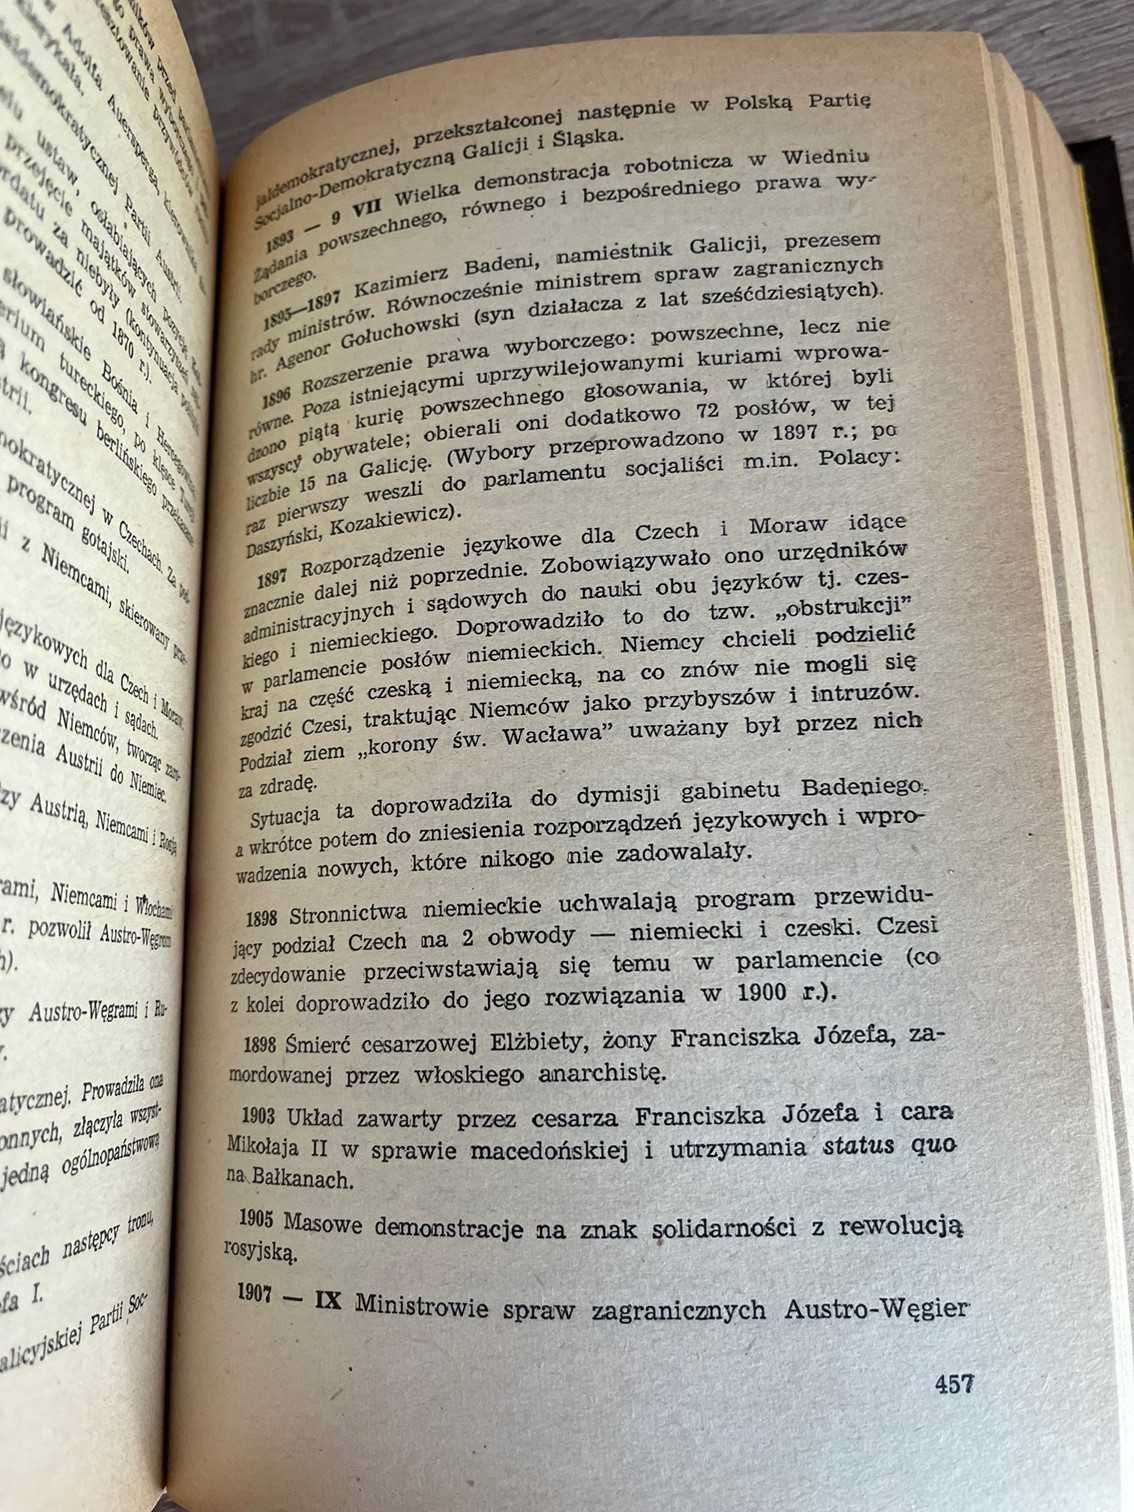 Dzieje Świata - praca zbiorowa - wyd. 1976r.